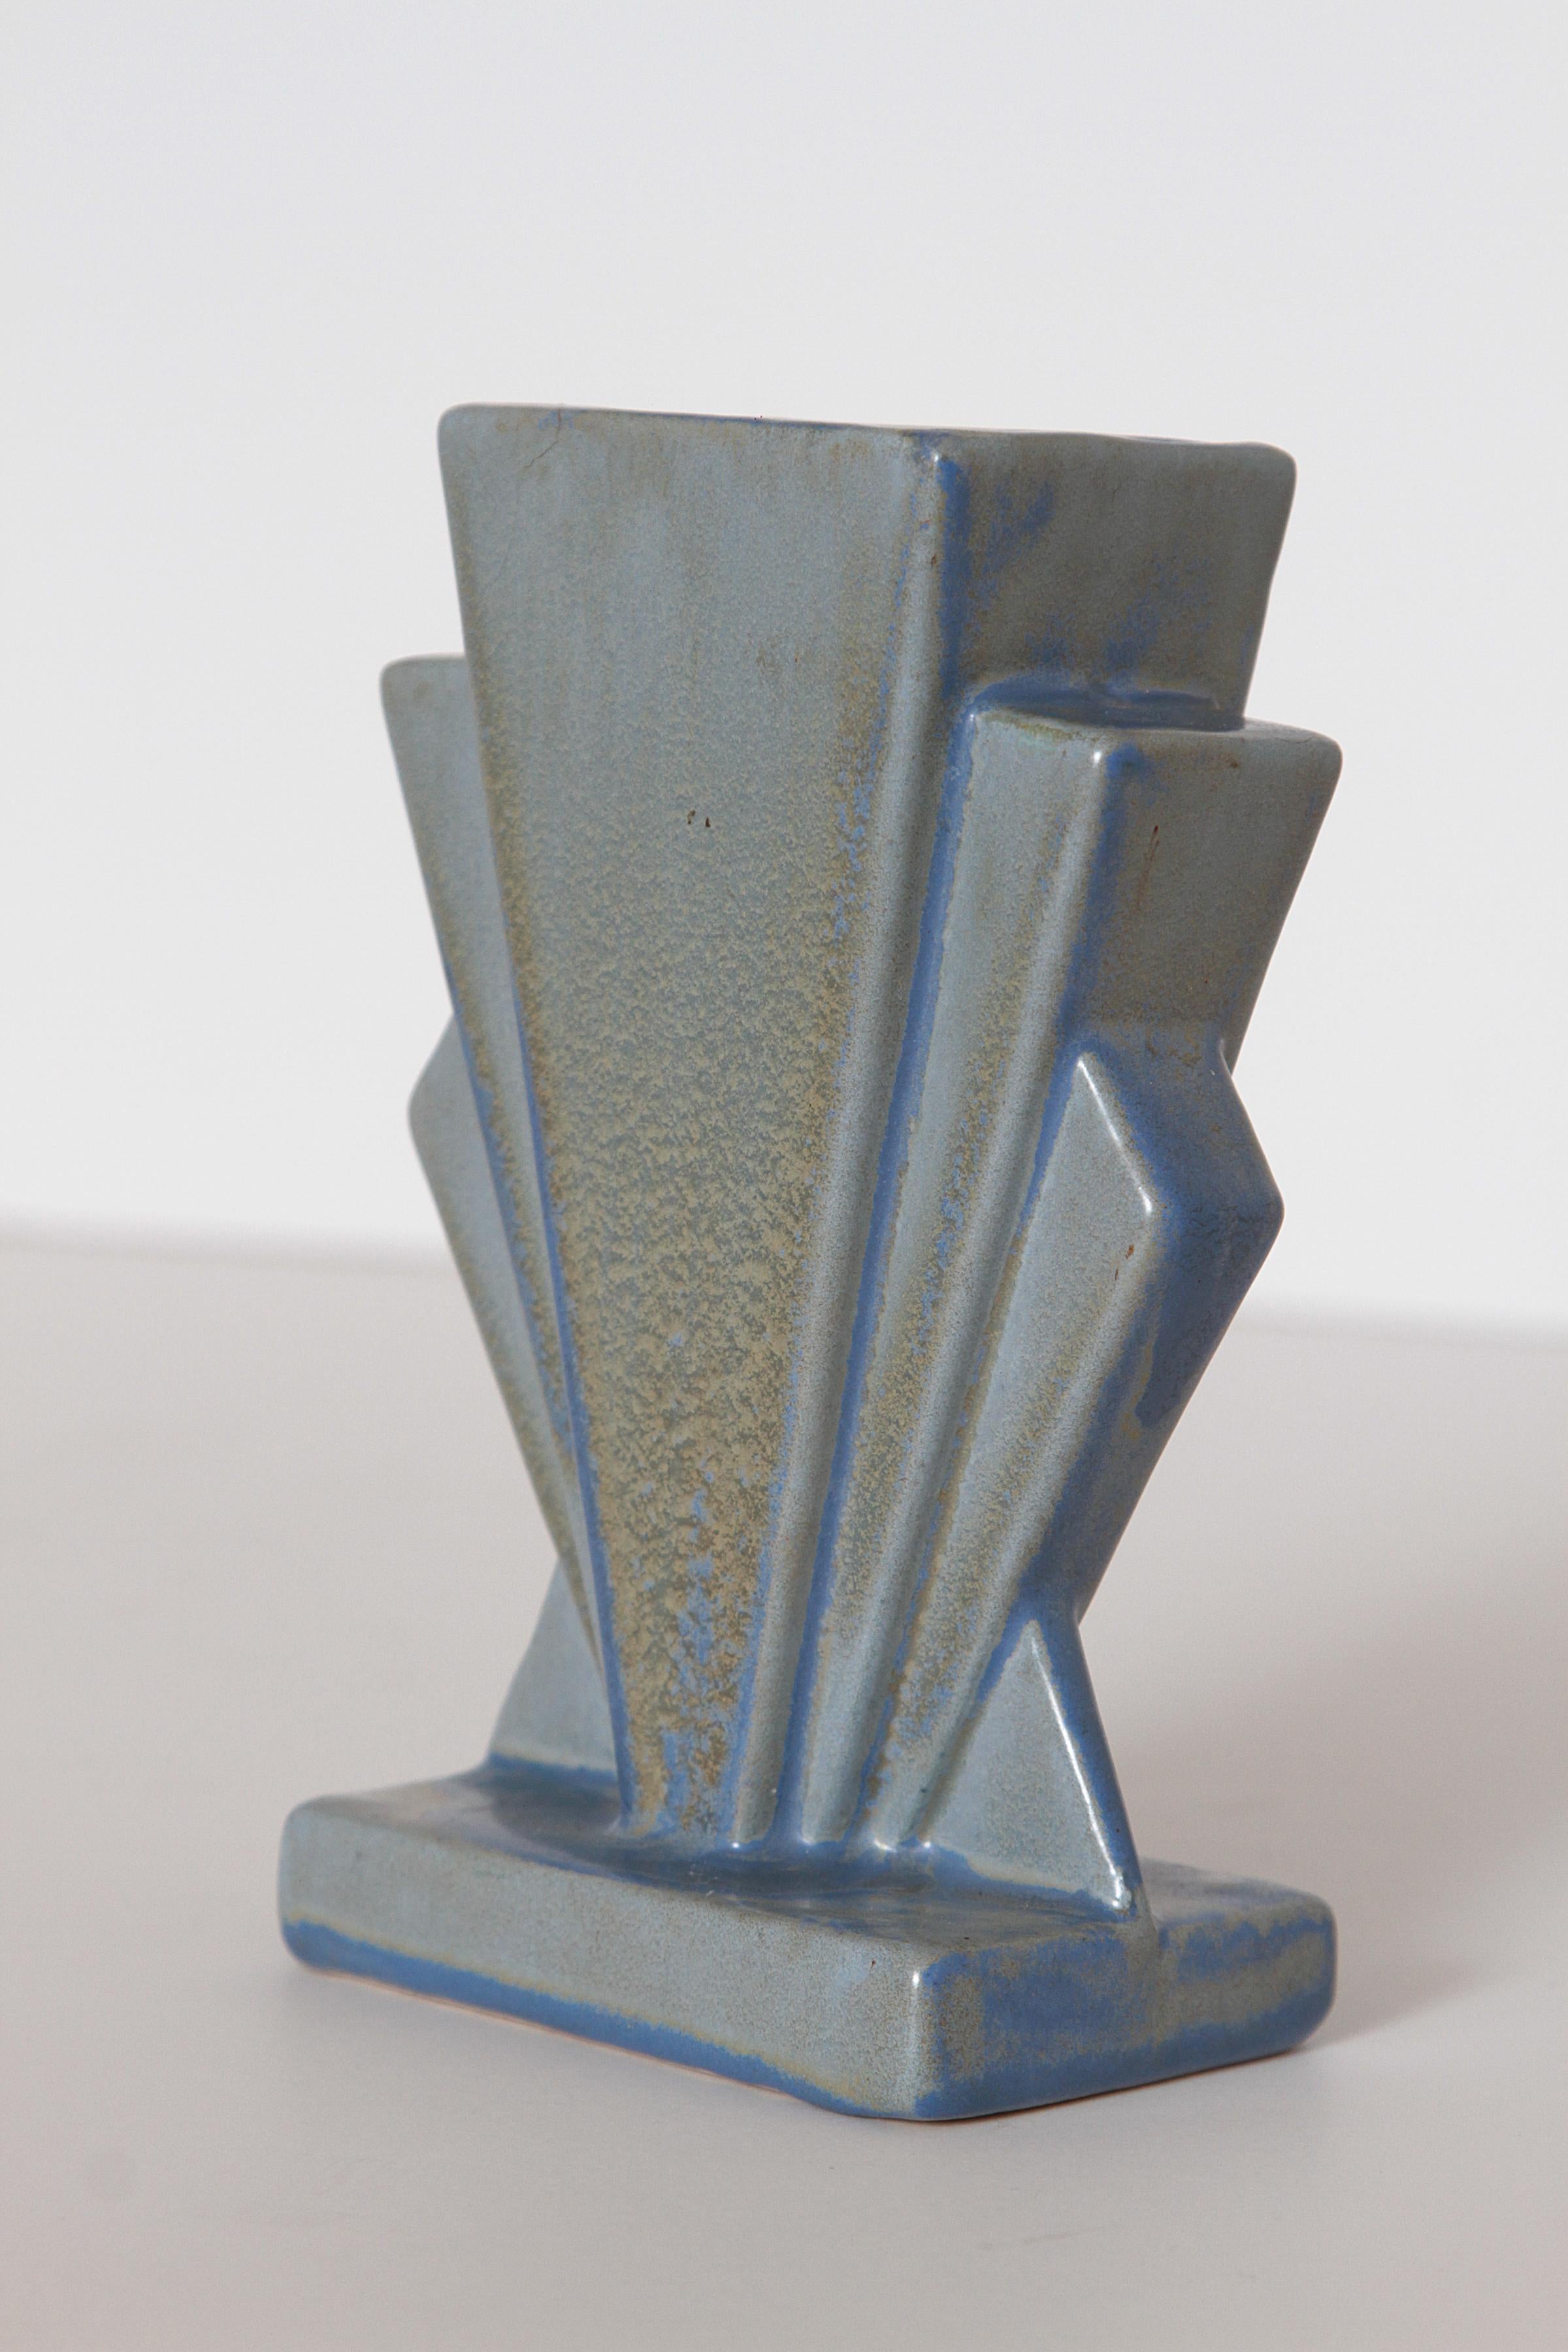 stangl pottery vase